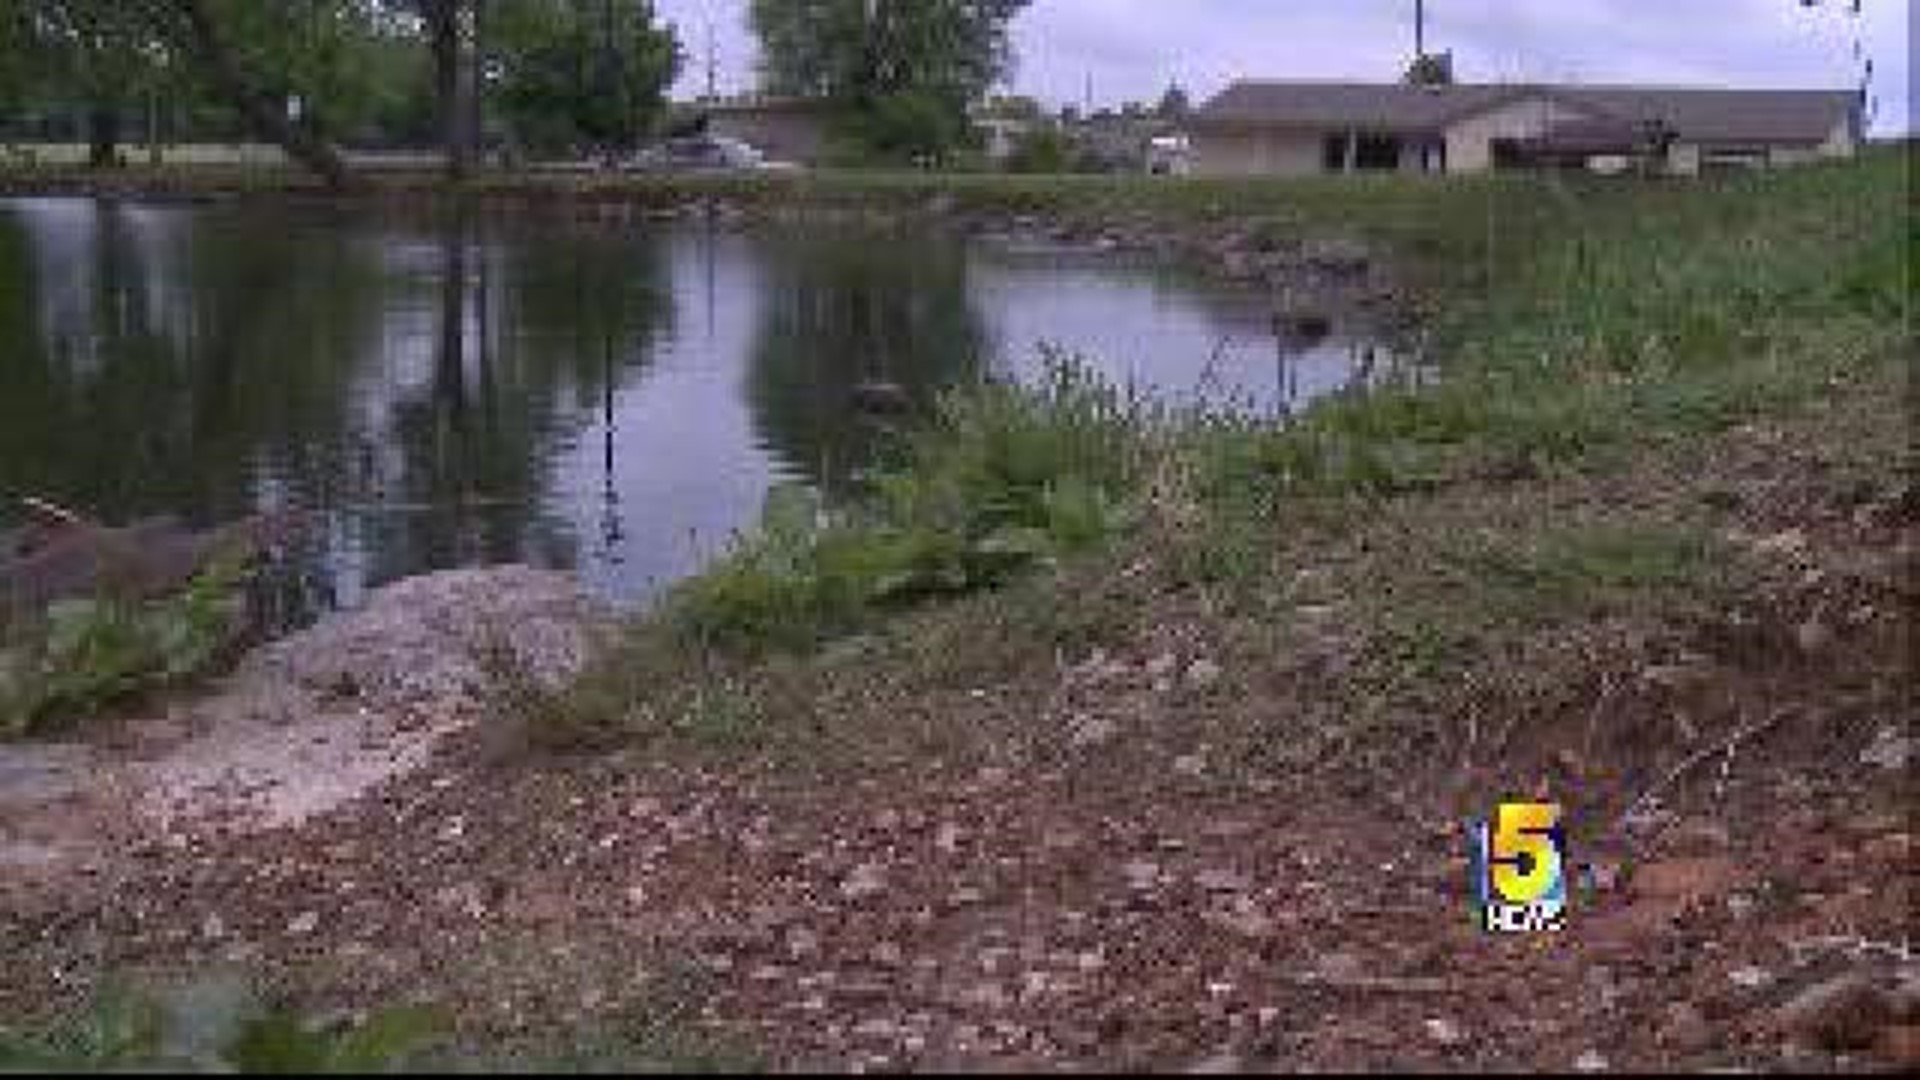 Springdale Man Dies After Pond Fall